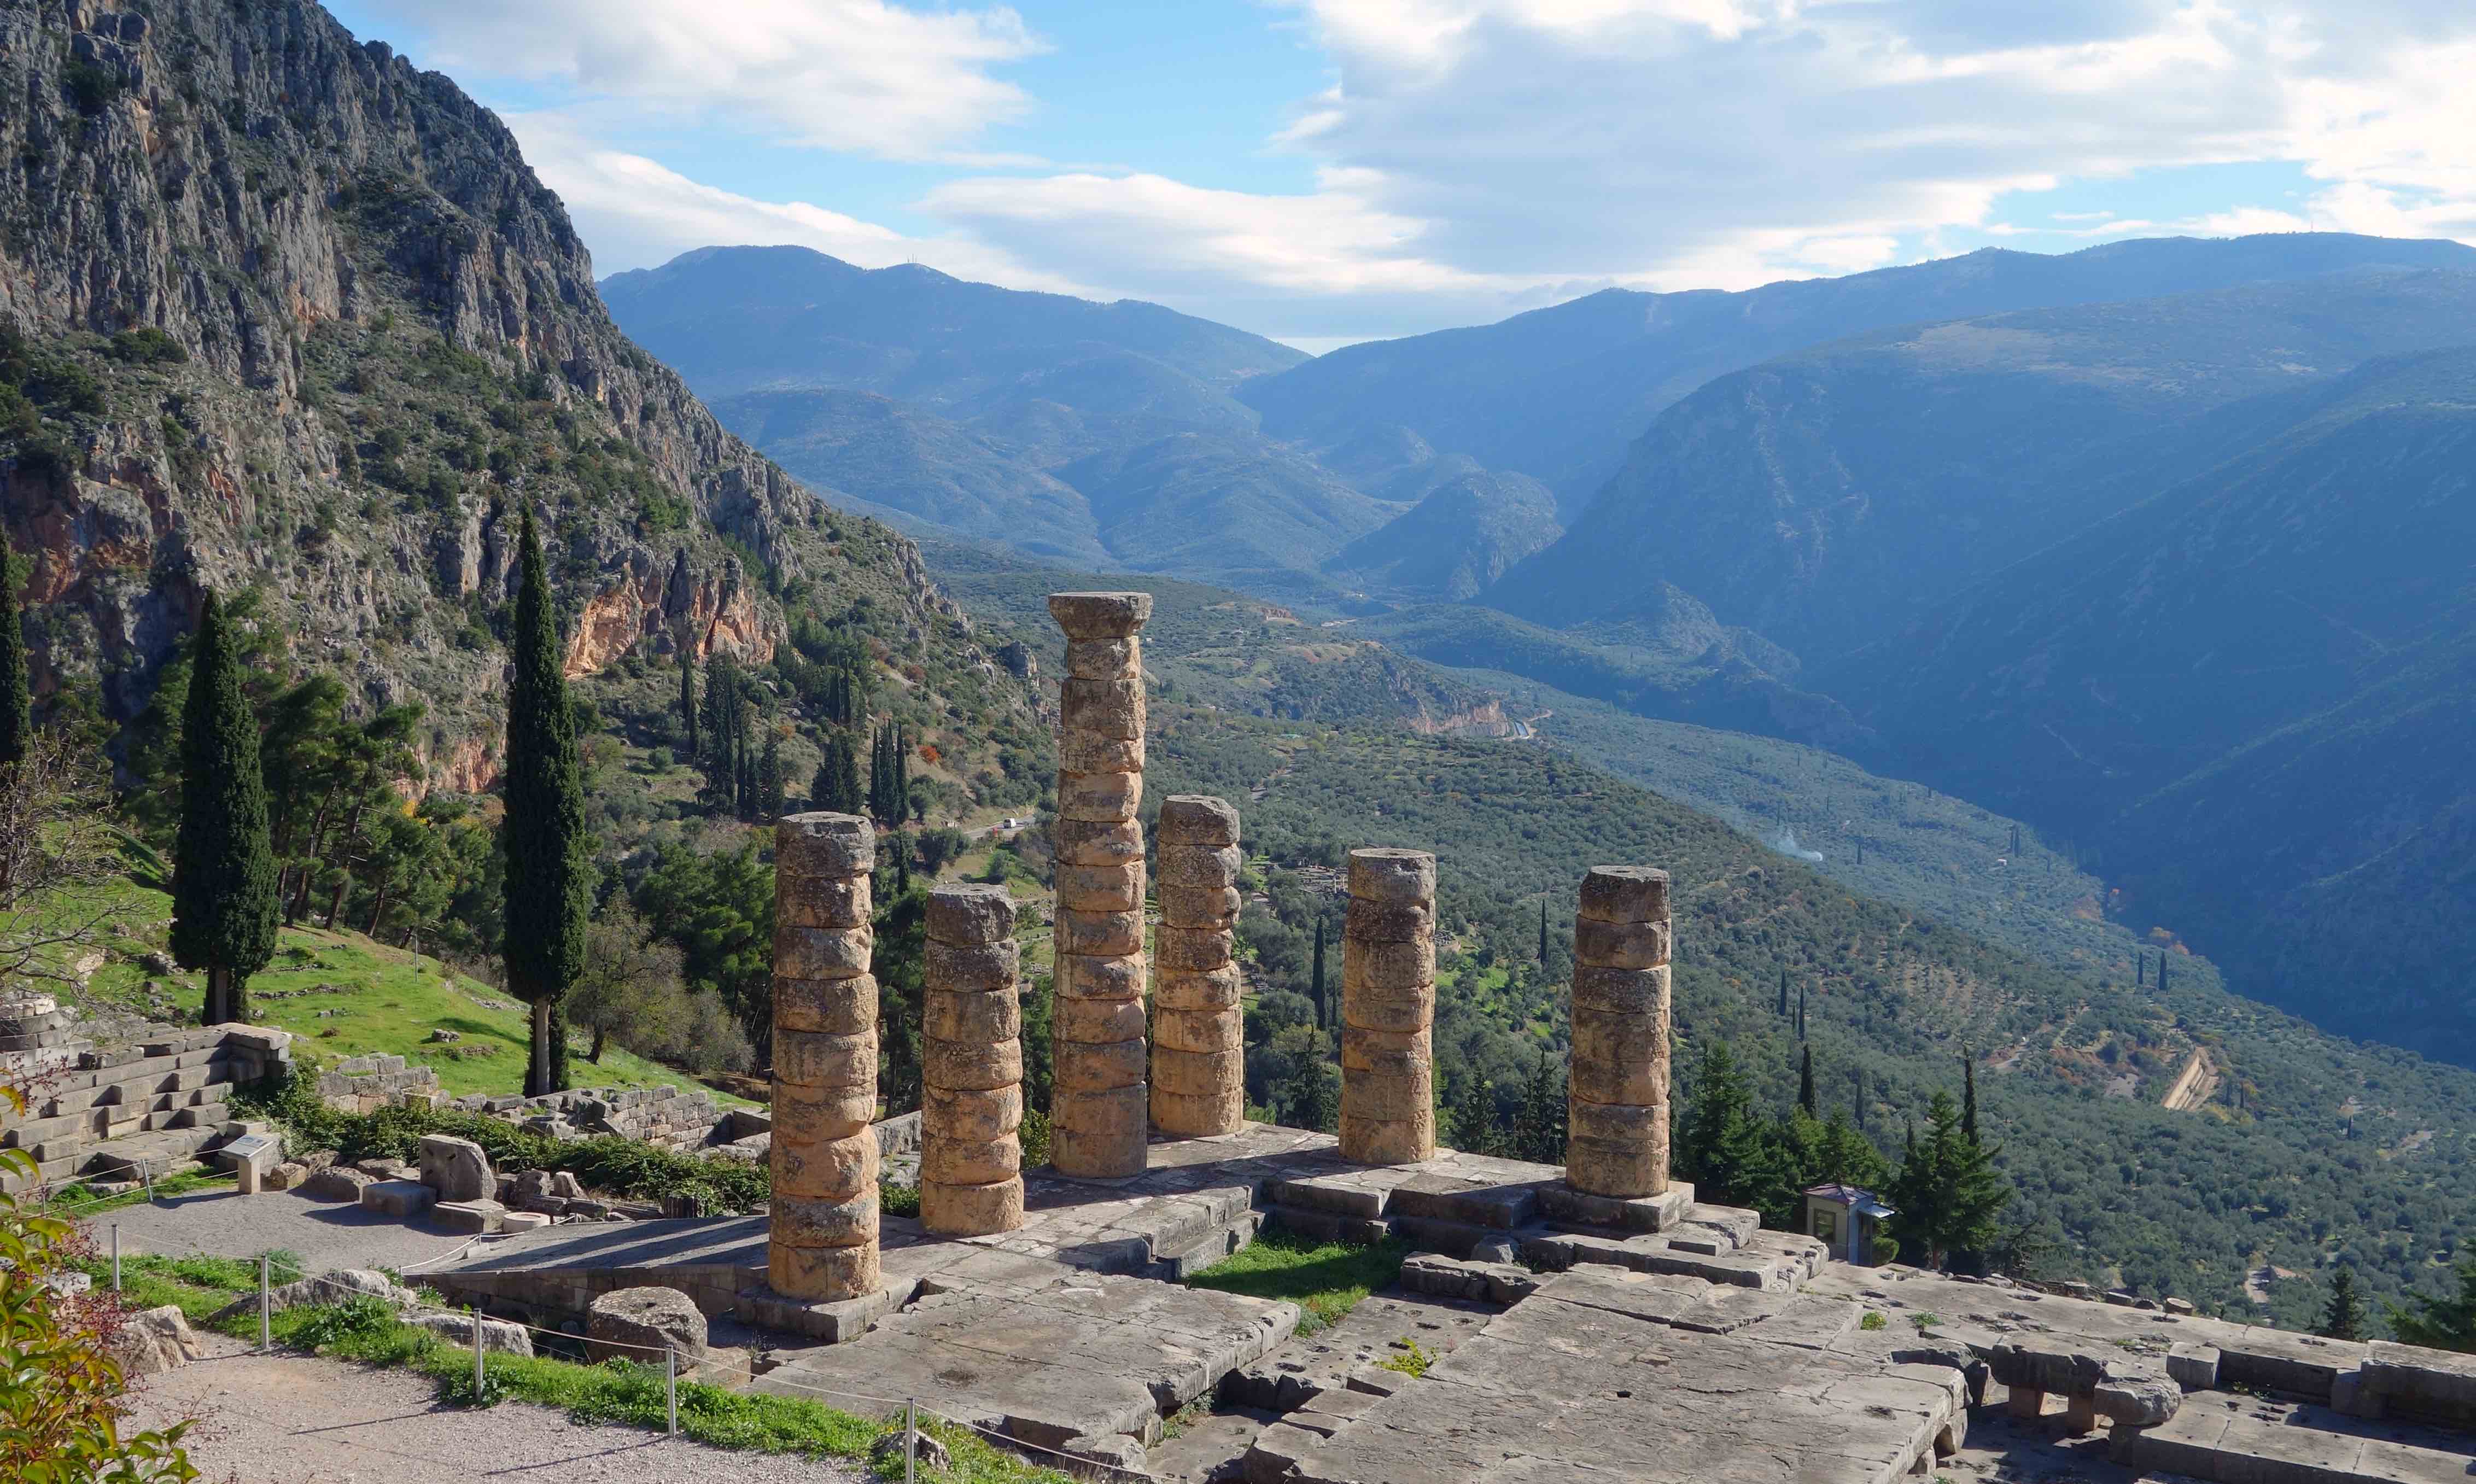 View down to the Temple of Apollo, Delphi Sanctuary of Apollo, Delphi, Greece